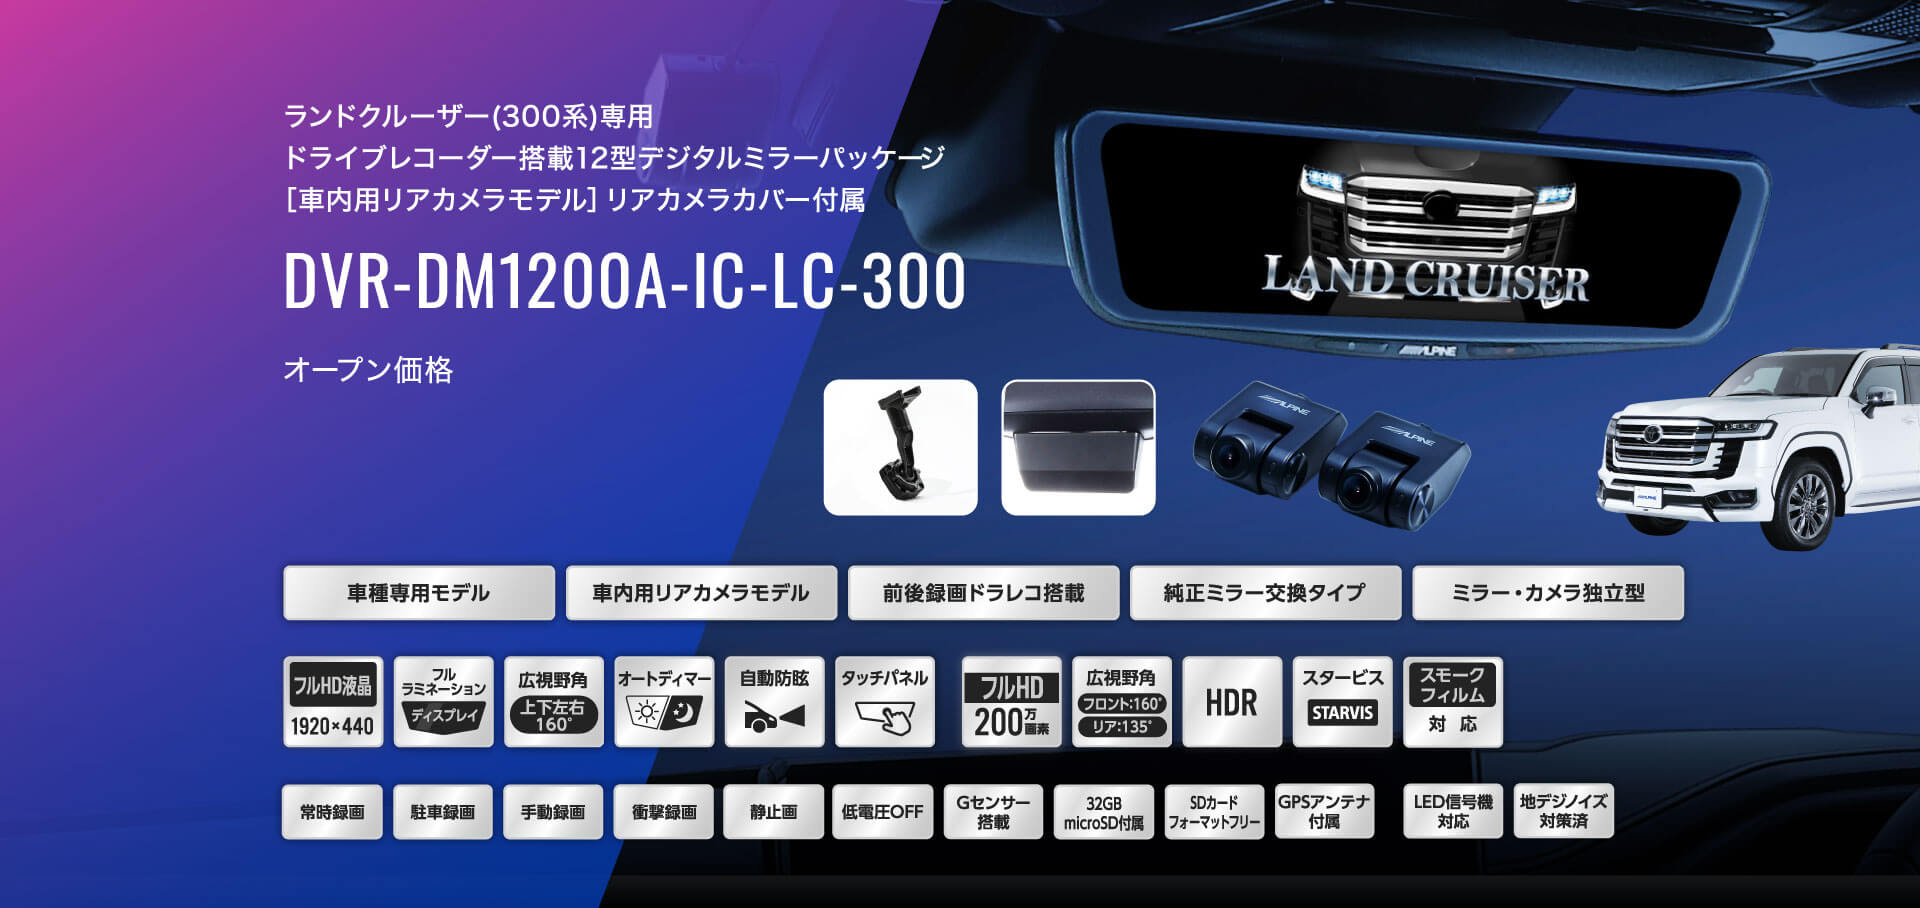 ランドクルーザー(300系)専用 ドライブレコーダー搭載12型デジタルミラーパッケージ［車内用リアカメラモデル］リアカメラカバー付属 DVR-DM1200A-IC-LC-300 オープン価格